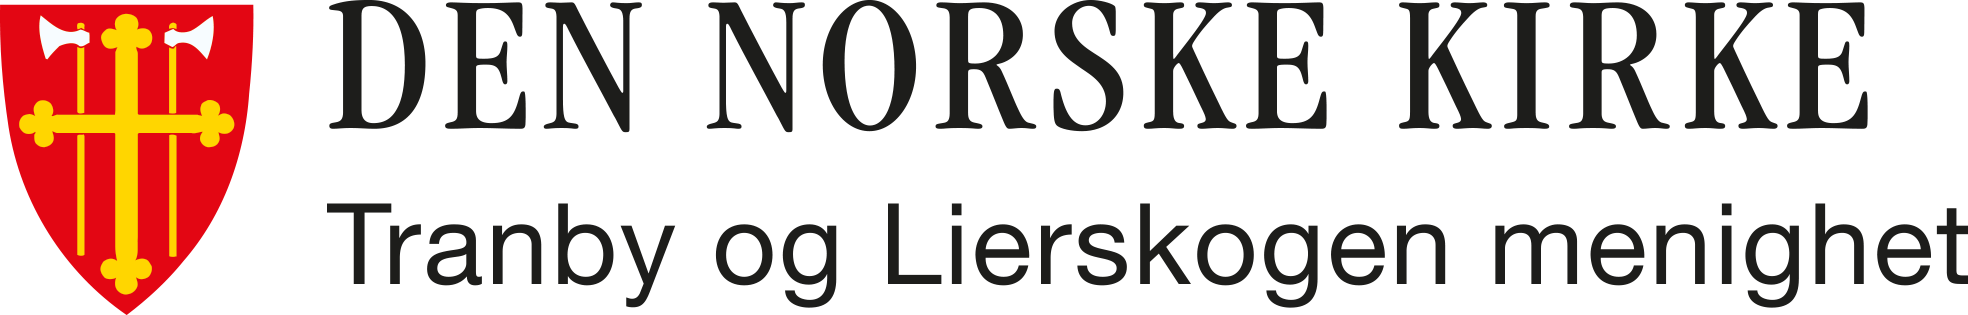 Tranby og Lierskogen menighet logo